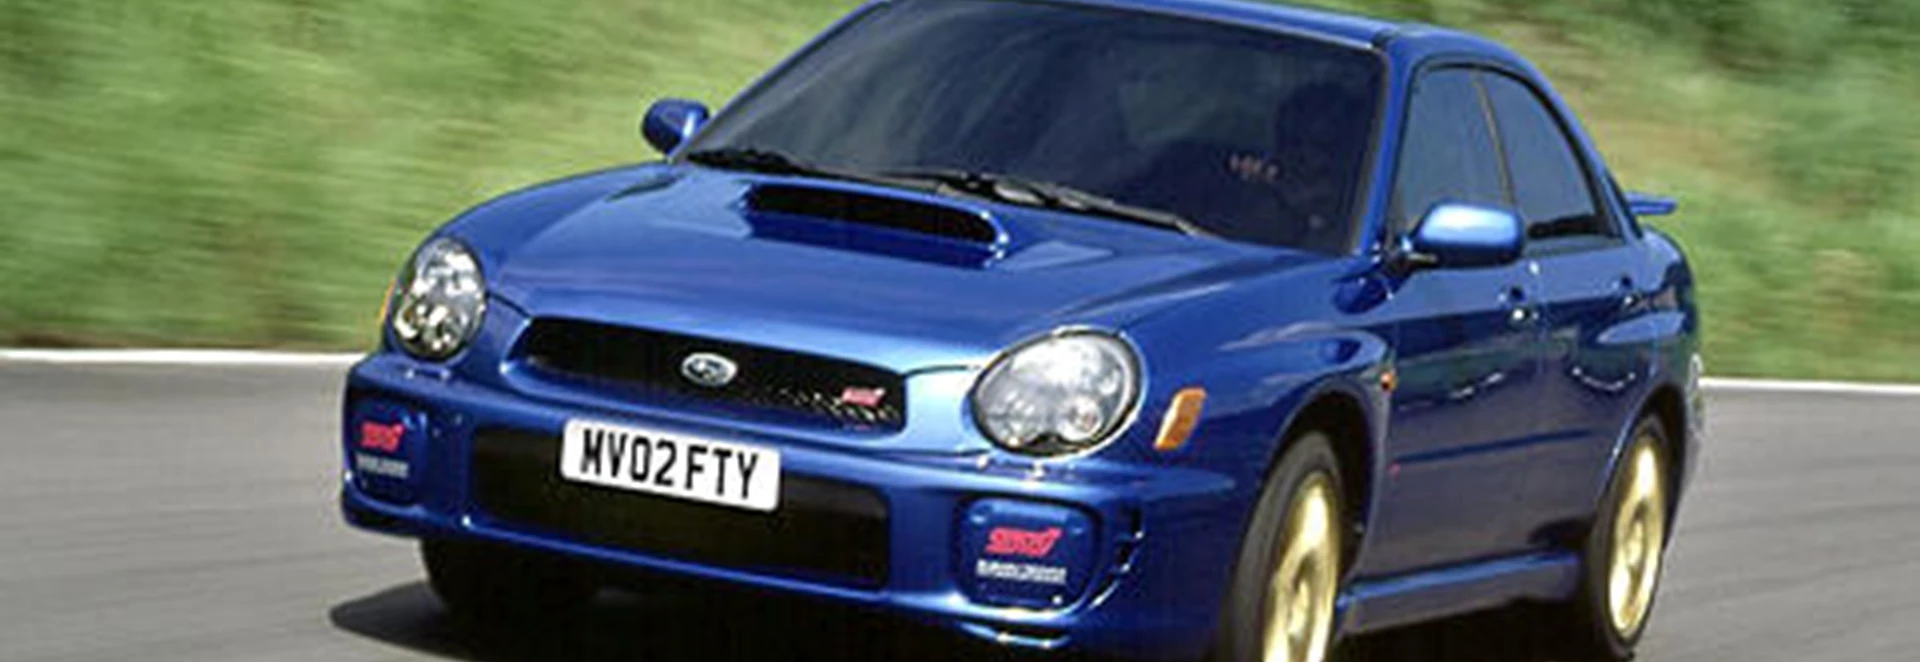 Subaru Impreza STi (2002) 